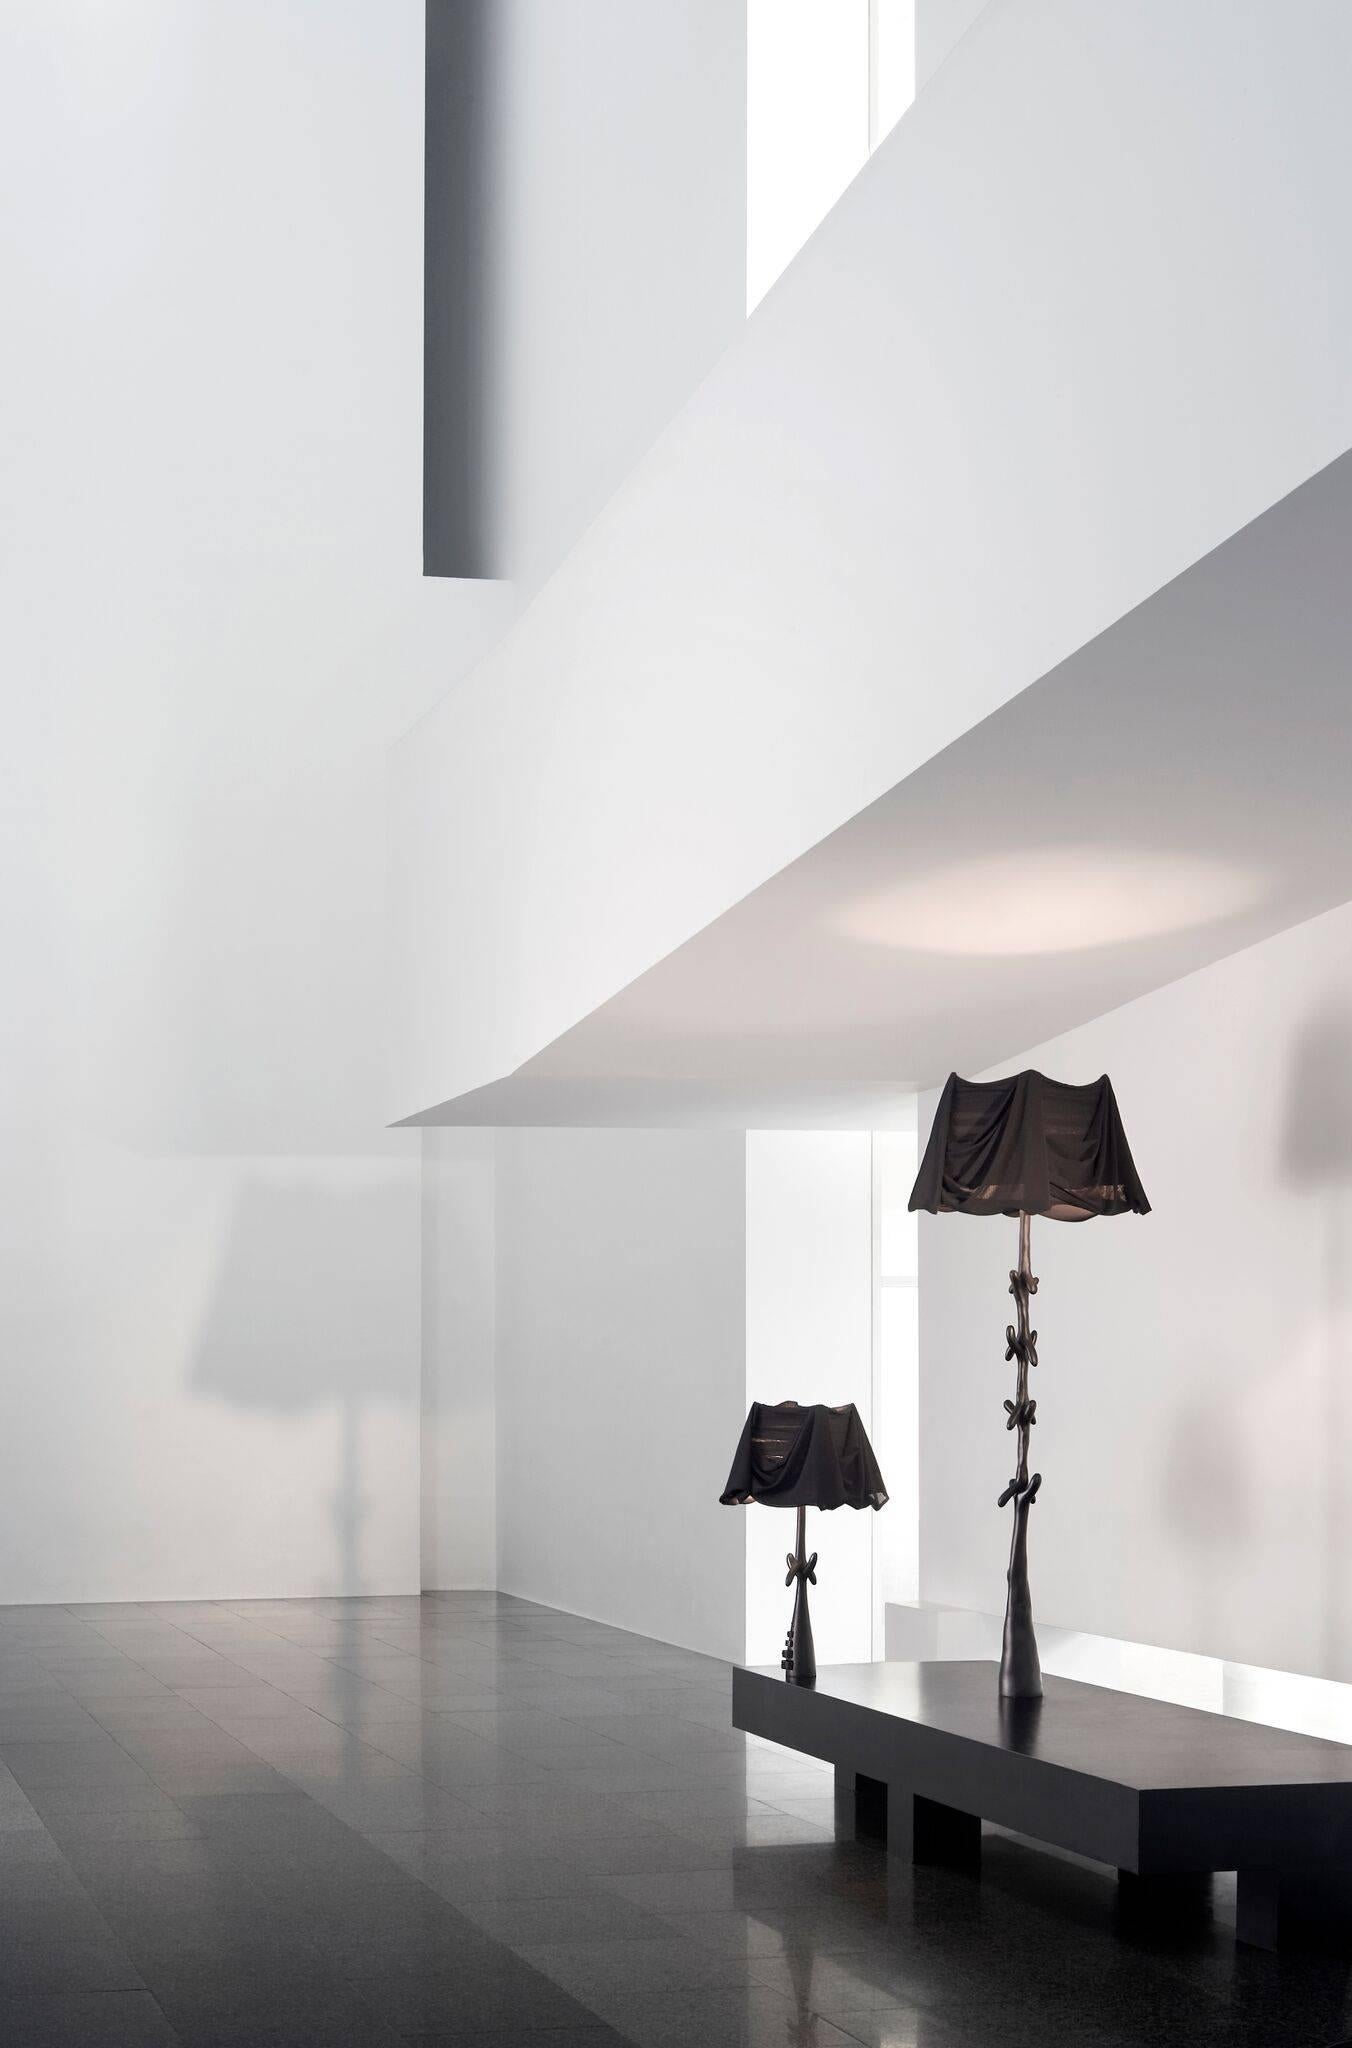 Bracelli-Lampen, entworfen von Salvador Dali, hergestellt von BD furniture in Barcelona.

Steh- und Tischlampen-Set.

Limitierte Auflage des schwarzen Labels.

Eine Stehlampe nach den Entwürfen Dalís für Jean Michel Frank. Die 